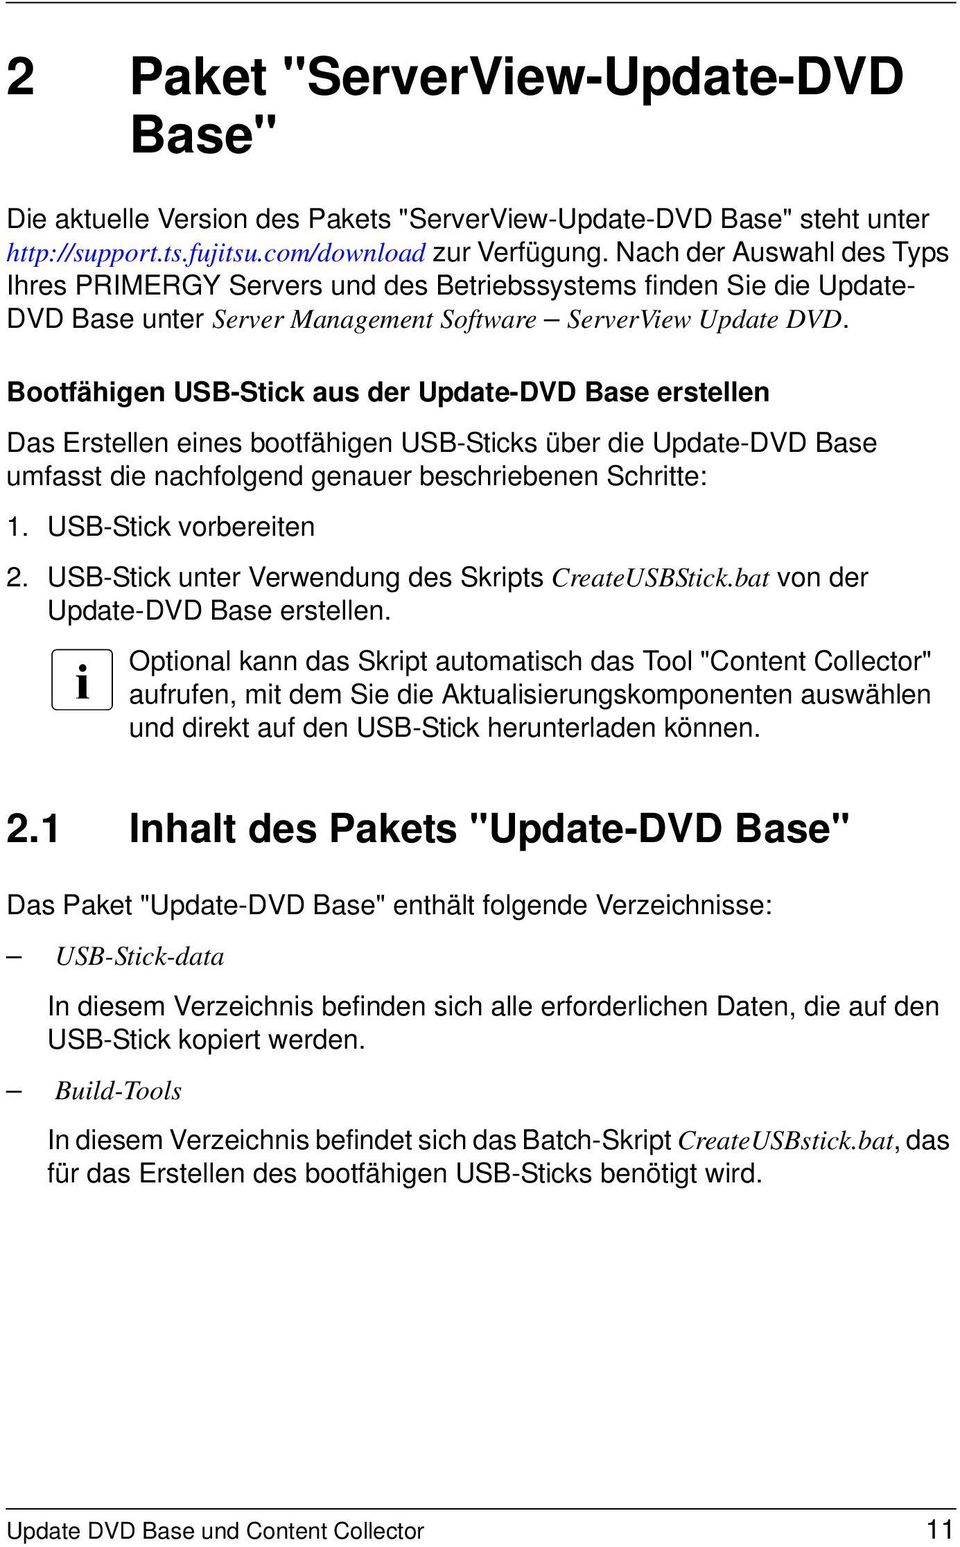 Bootfähigen USB-Stick aus der Update-DVD Base erstellen Das Erstellen eines bootfähigen USB-Sticks über die Update-DVD Base umfasst die nachfolgend genauer beschriebenen Schritte: 1.